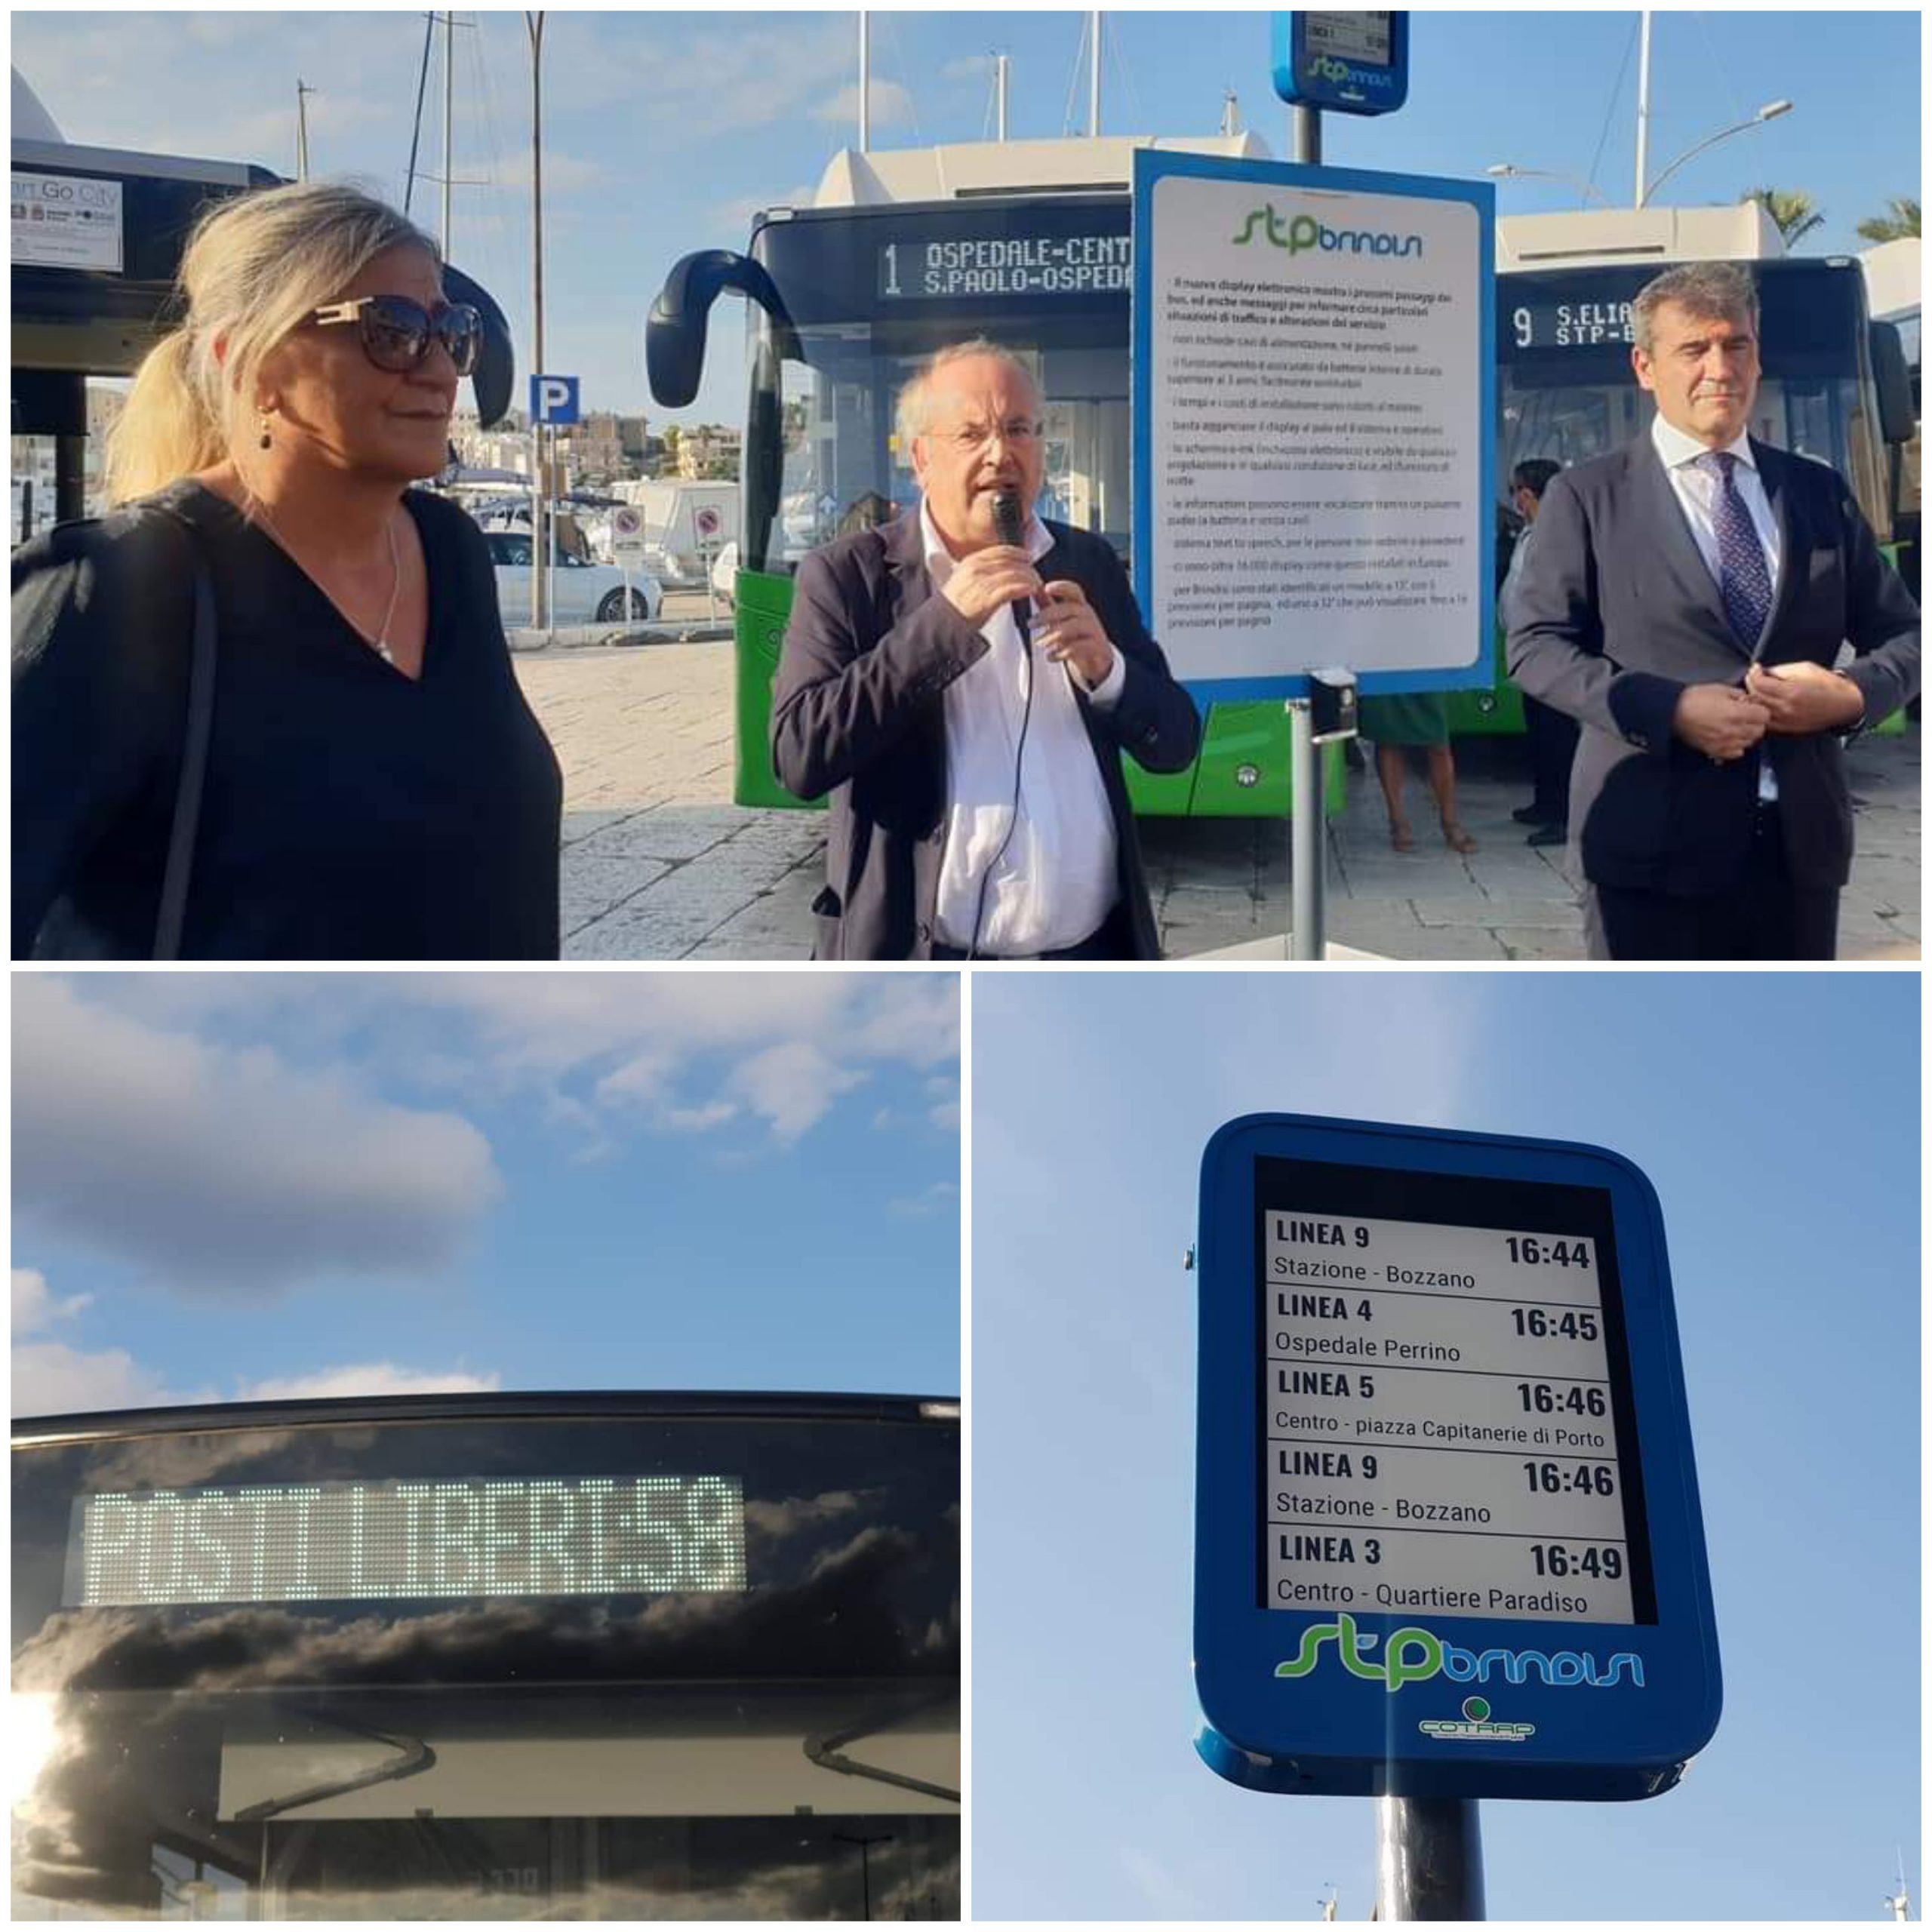 Nuovi bus e paline elettroniche, Rossi: “Ottimo risultato nella direzione della mobilità sostenibile”